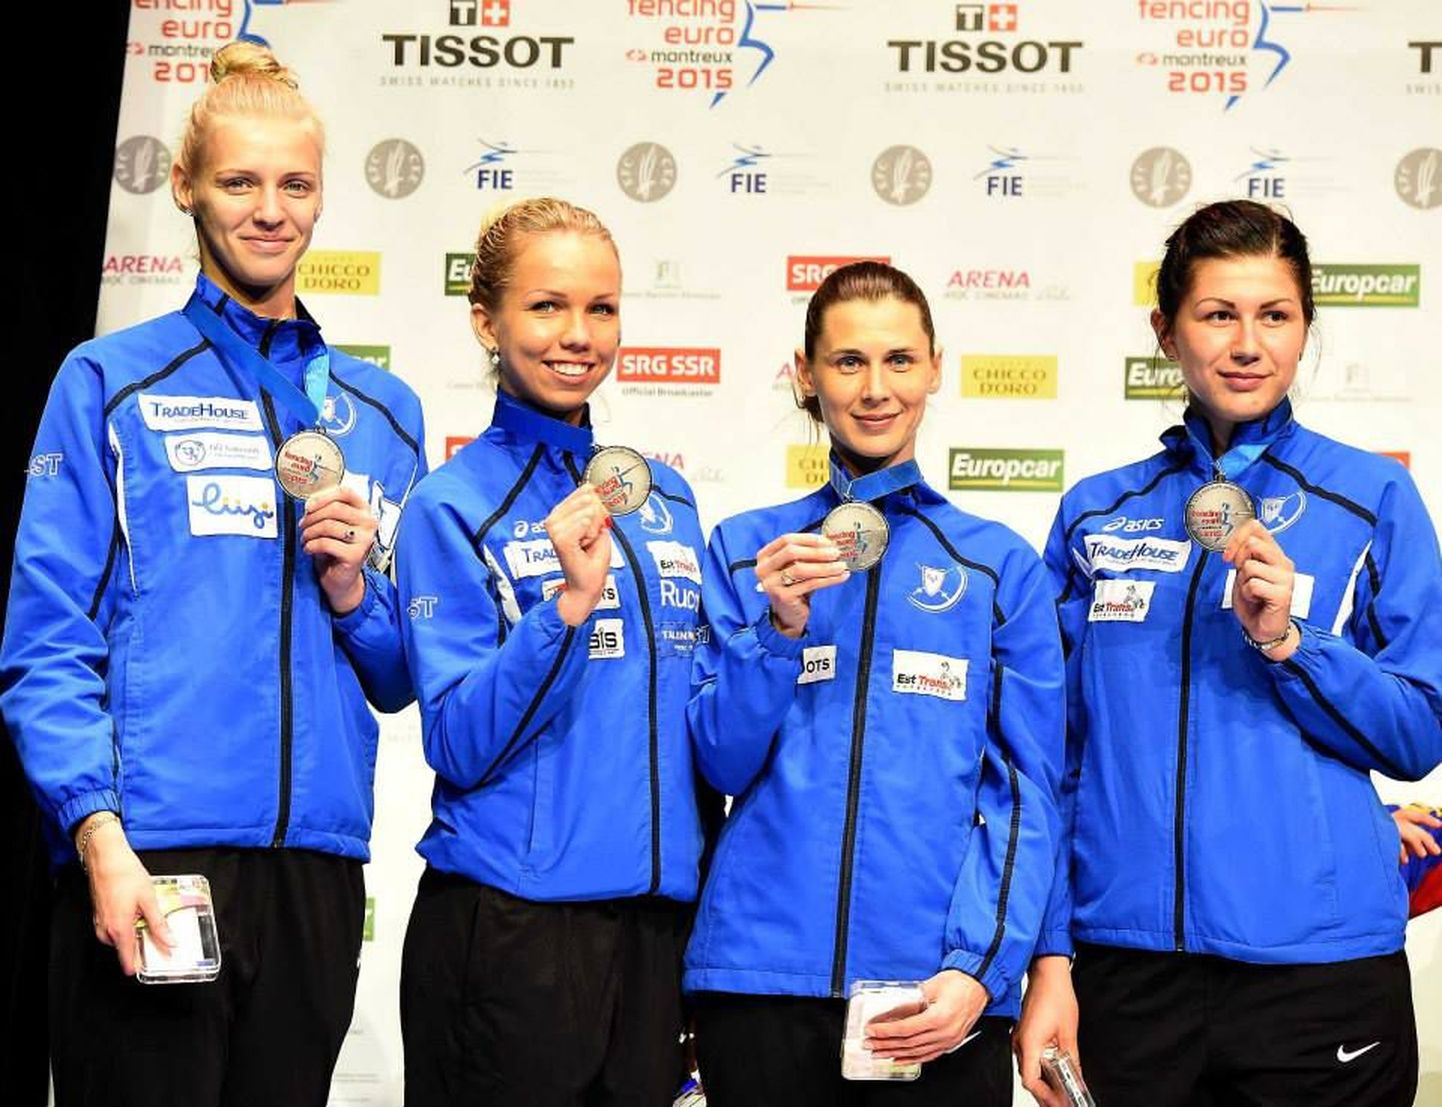 Слева направо: Катарина Лехис, Эрика Кирпу, Ирина Эмбрих и Юлия Беляева.